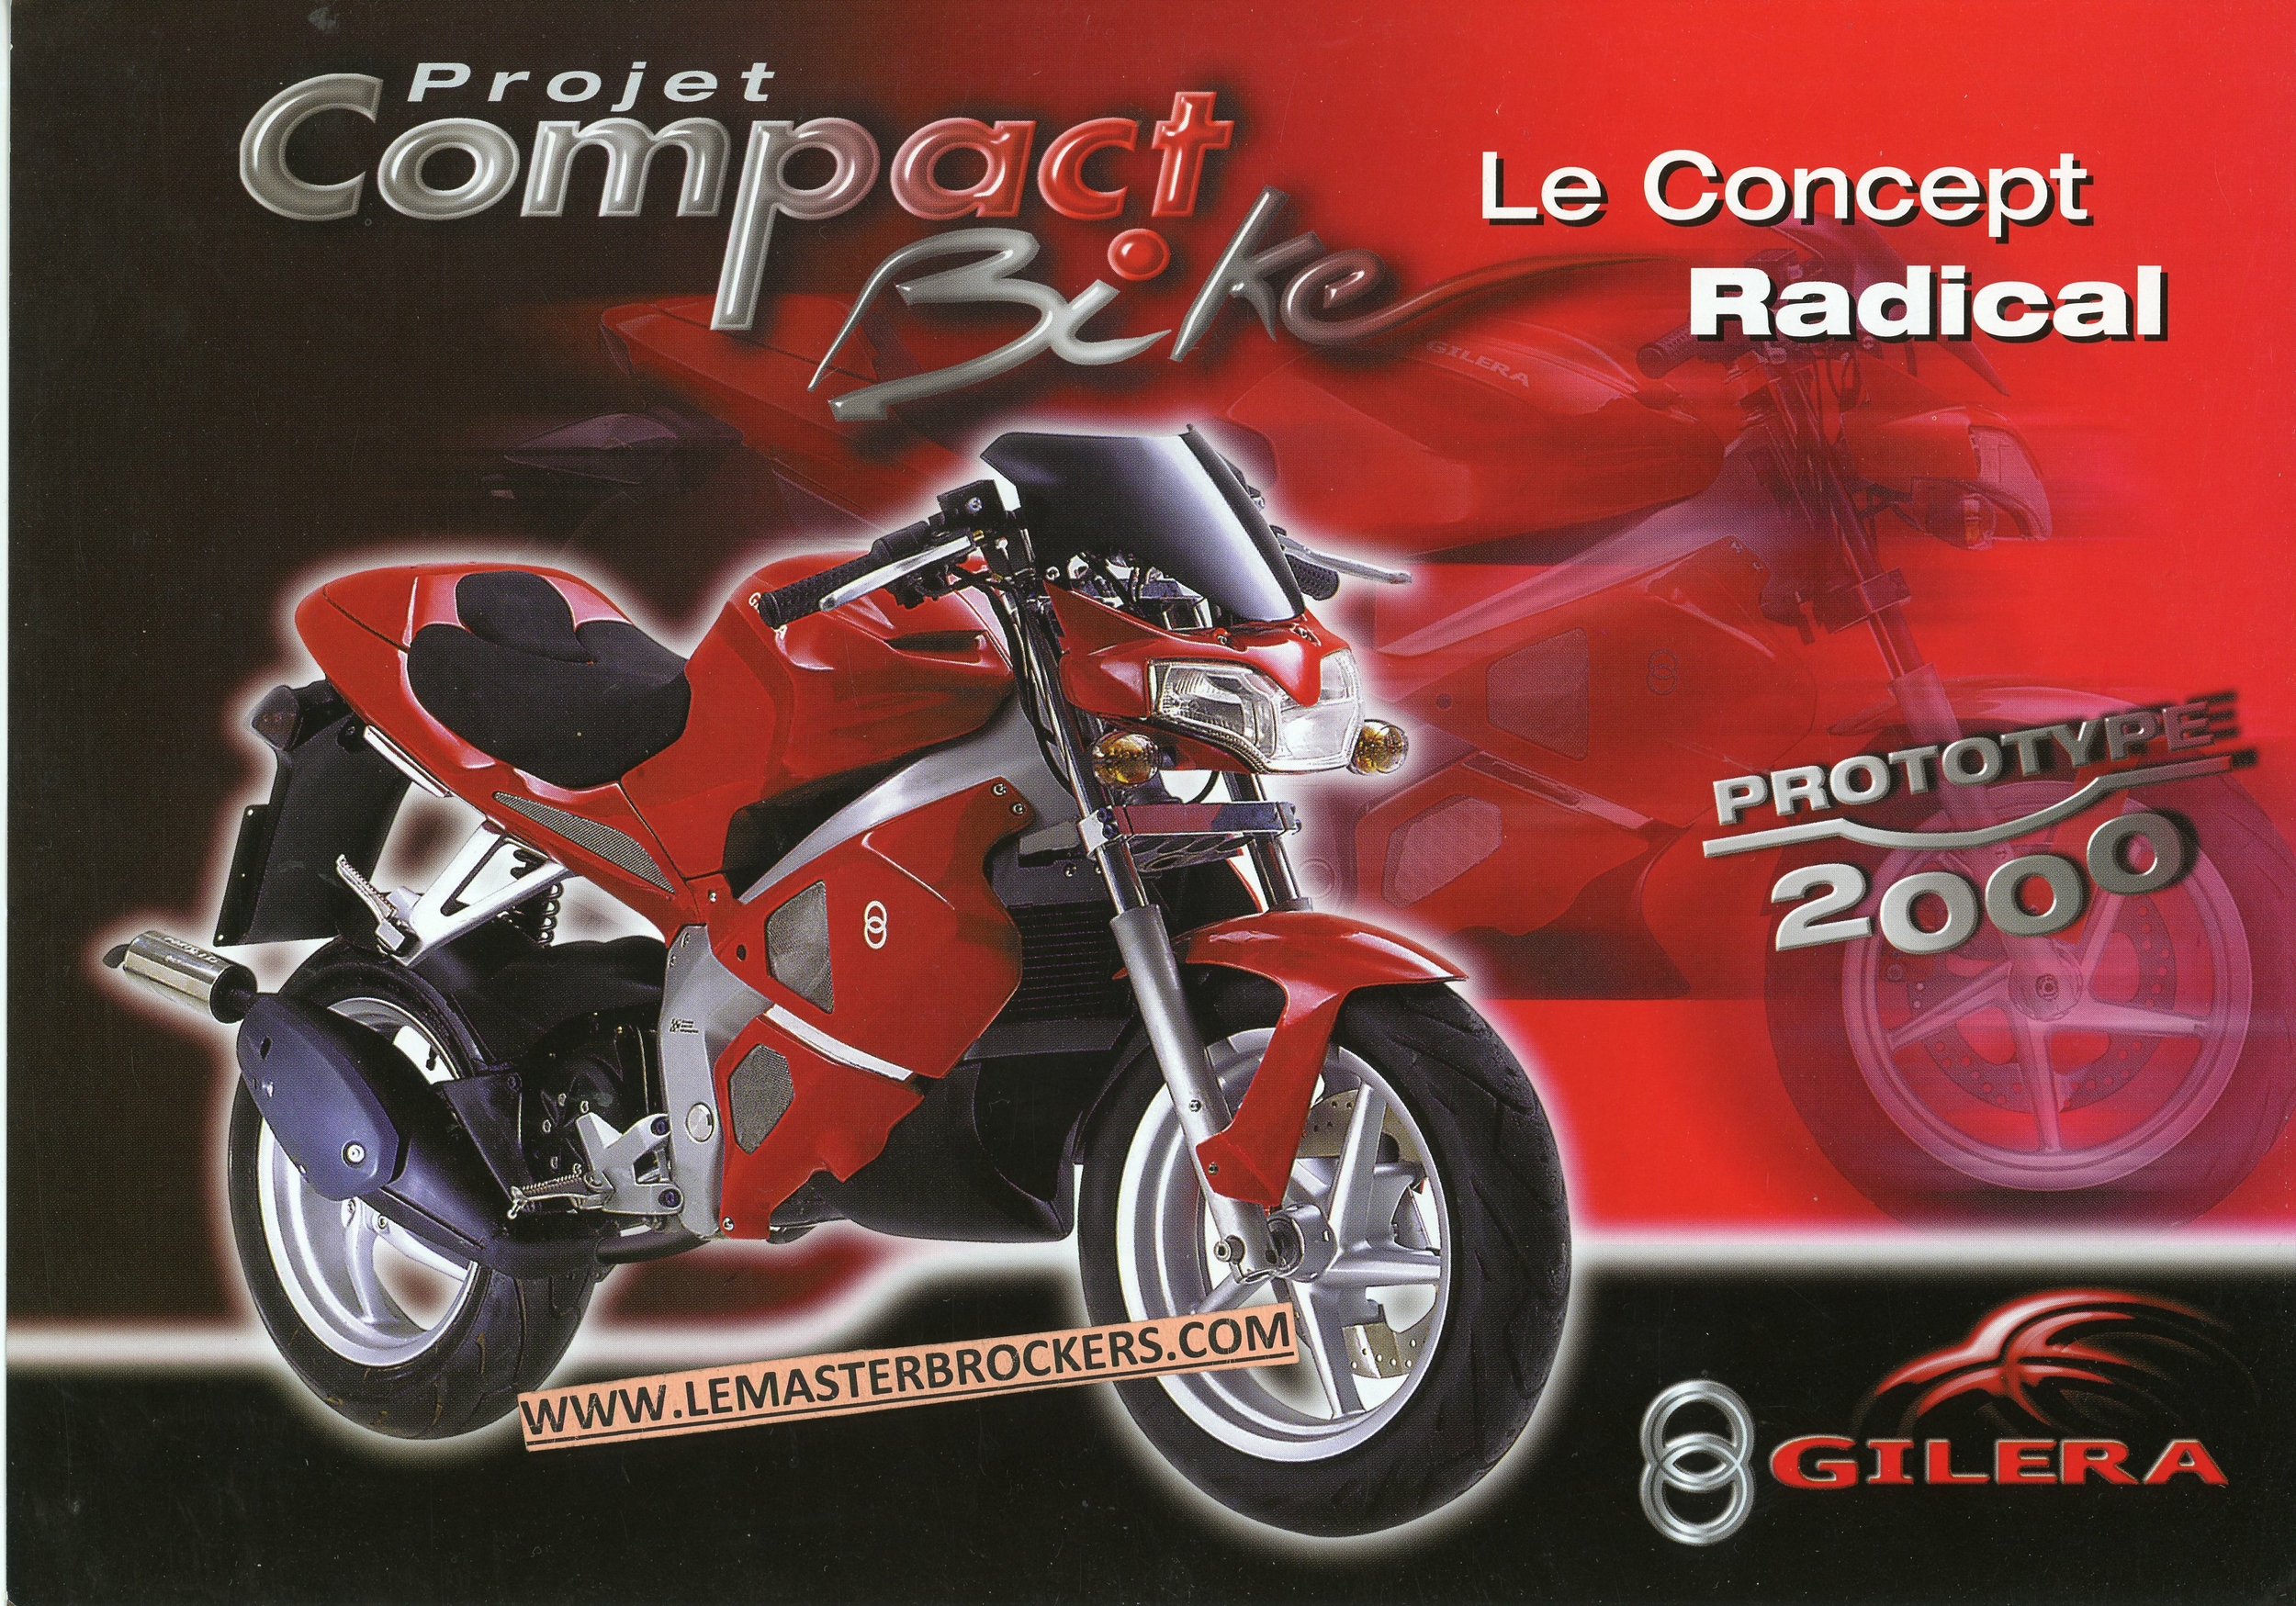 BROCHURE-MOTO-GILERA-COMPACT-BIKE-PROTOTYPE-2000-LEMASTERBROCKERS